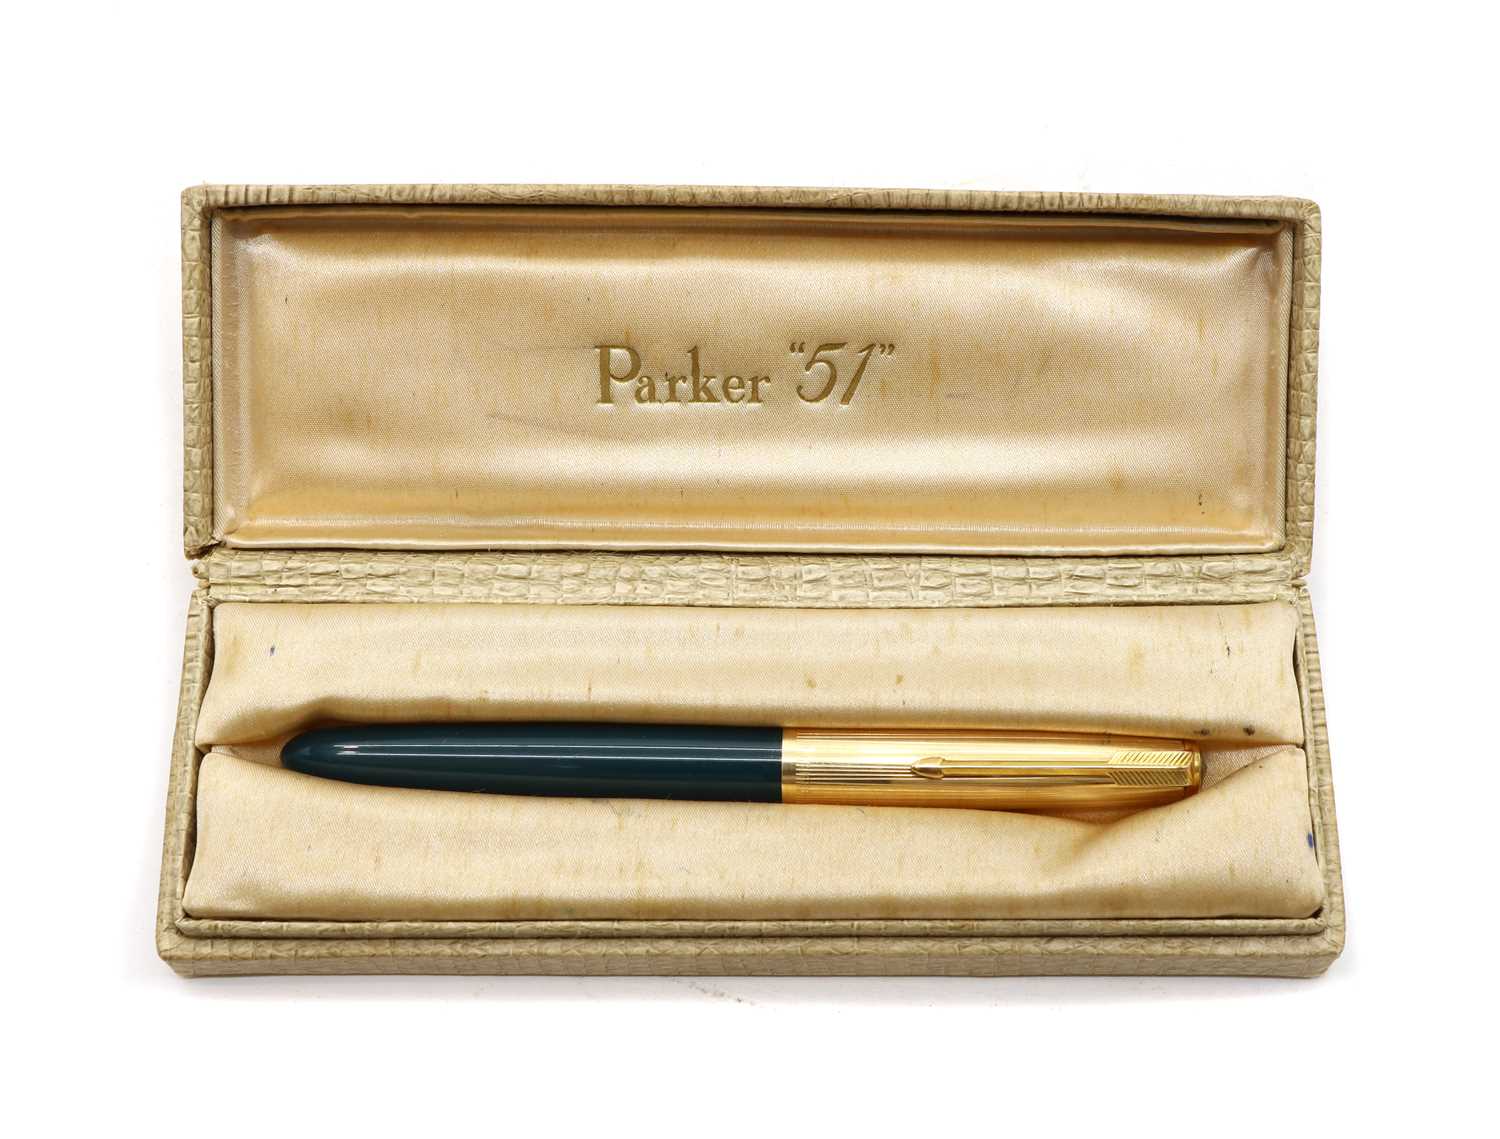 Lot 81 - A Parker S1 fountain pen